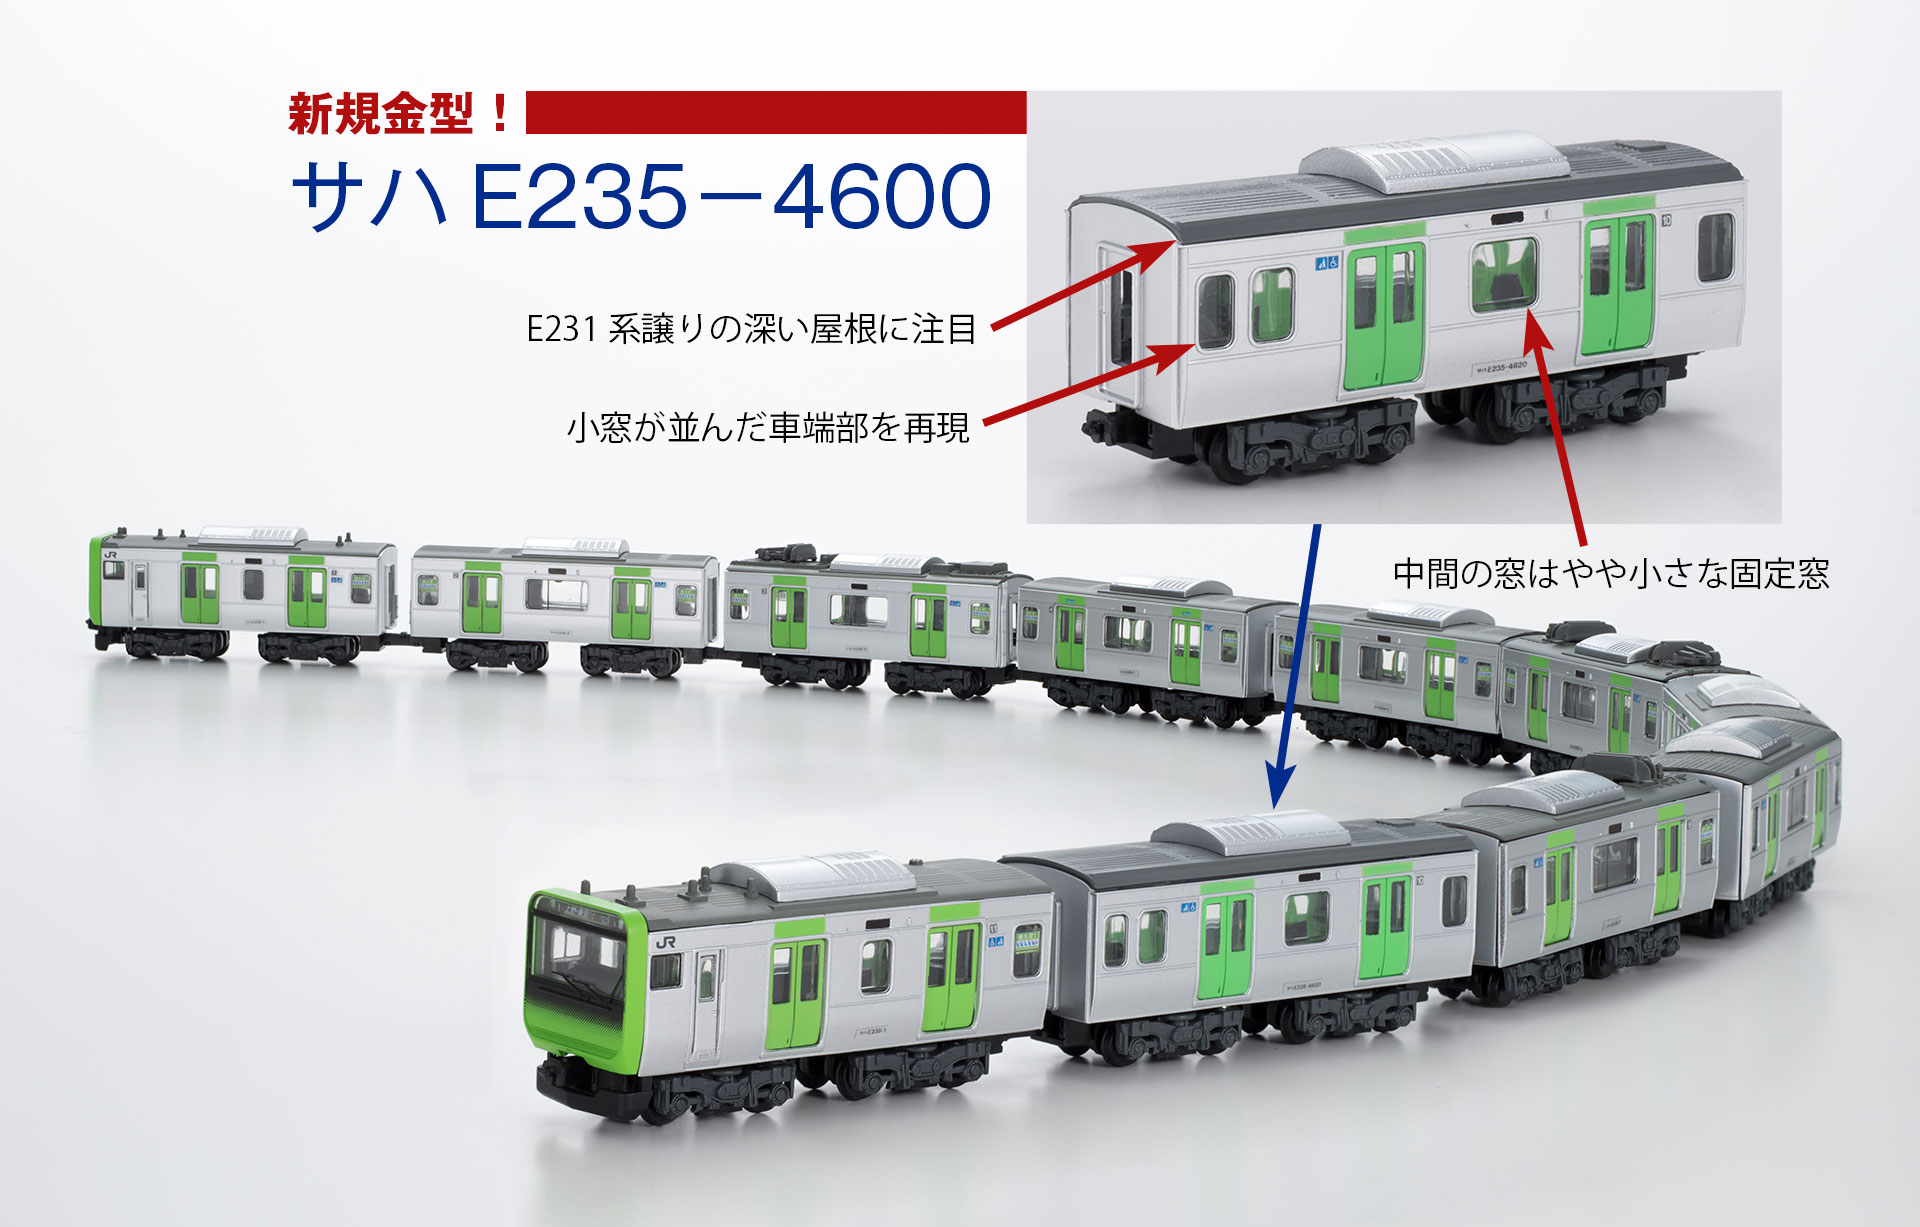 Bトレインショーティー 103系 30N 大阪環状線 | www.kinderpartys.at